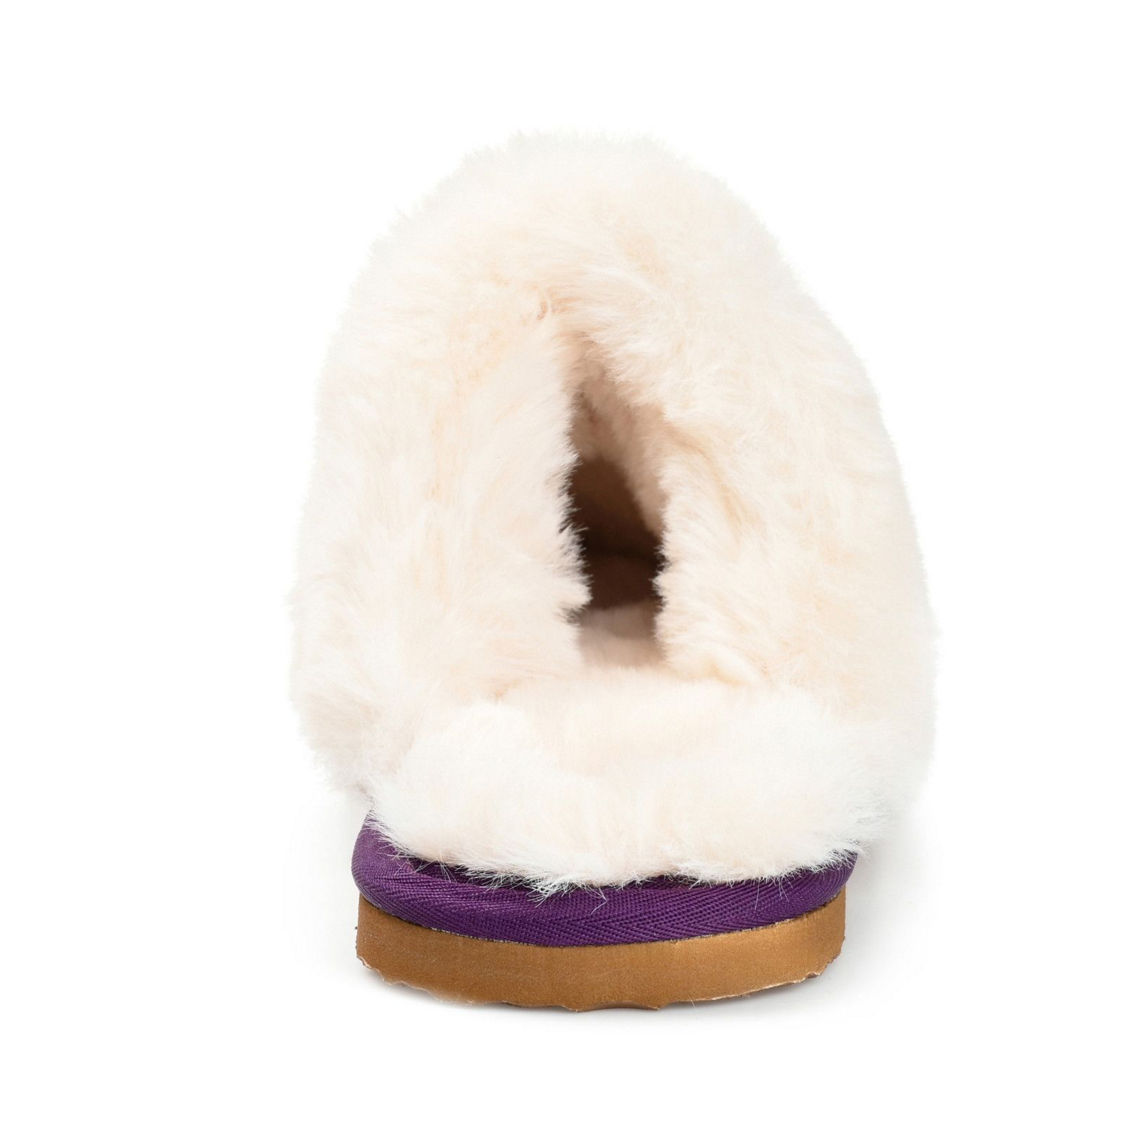 Journee Collection Women's Tru Comfort Foam™ Delanee Slipper - Image 3 of 4